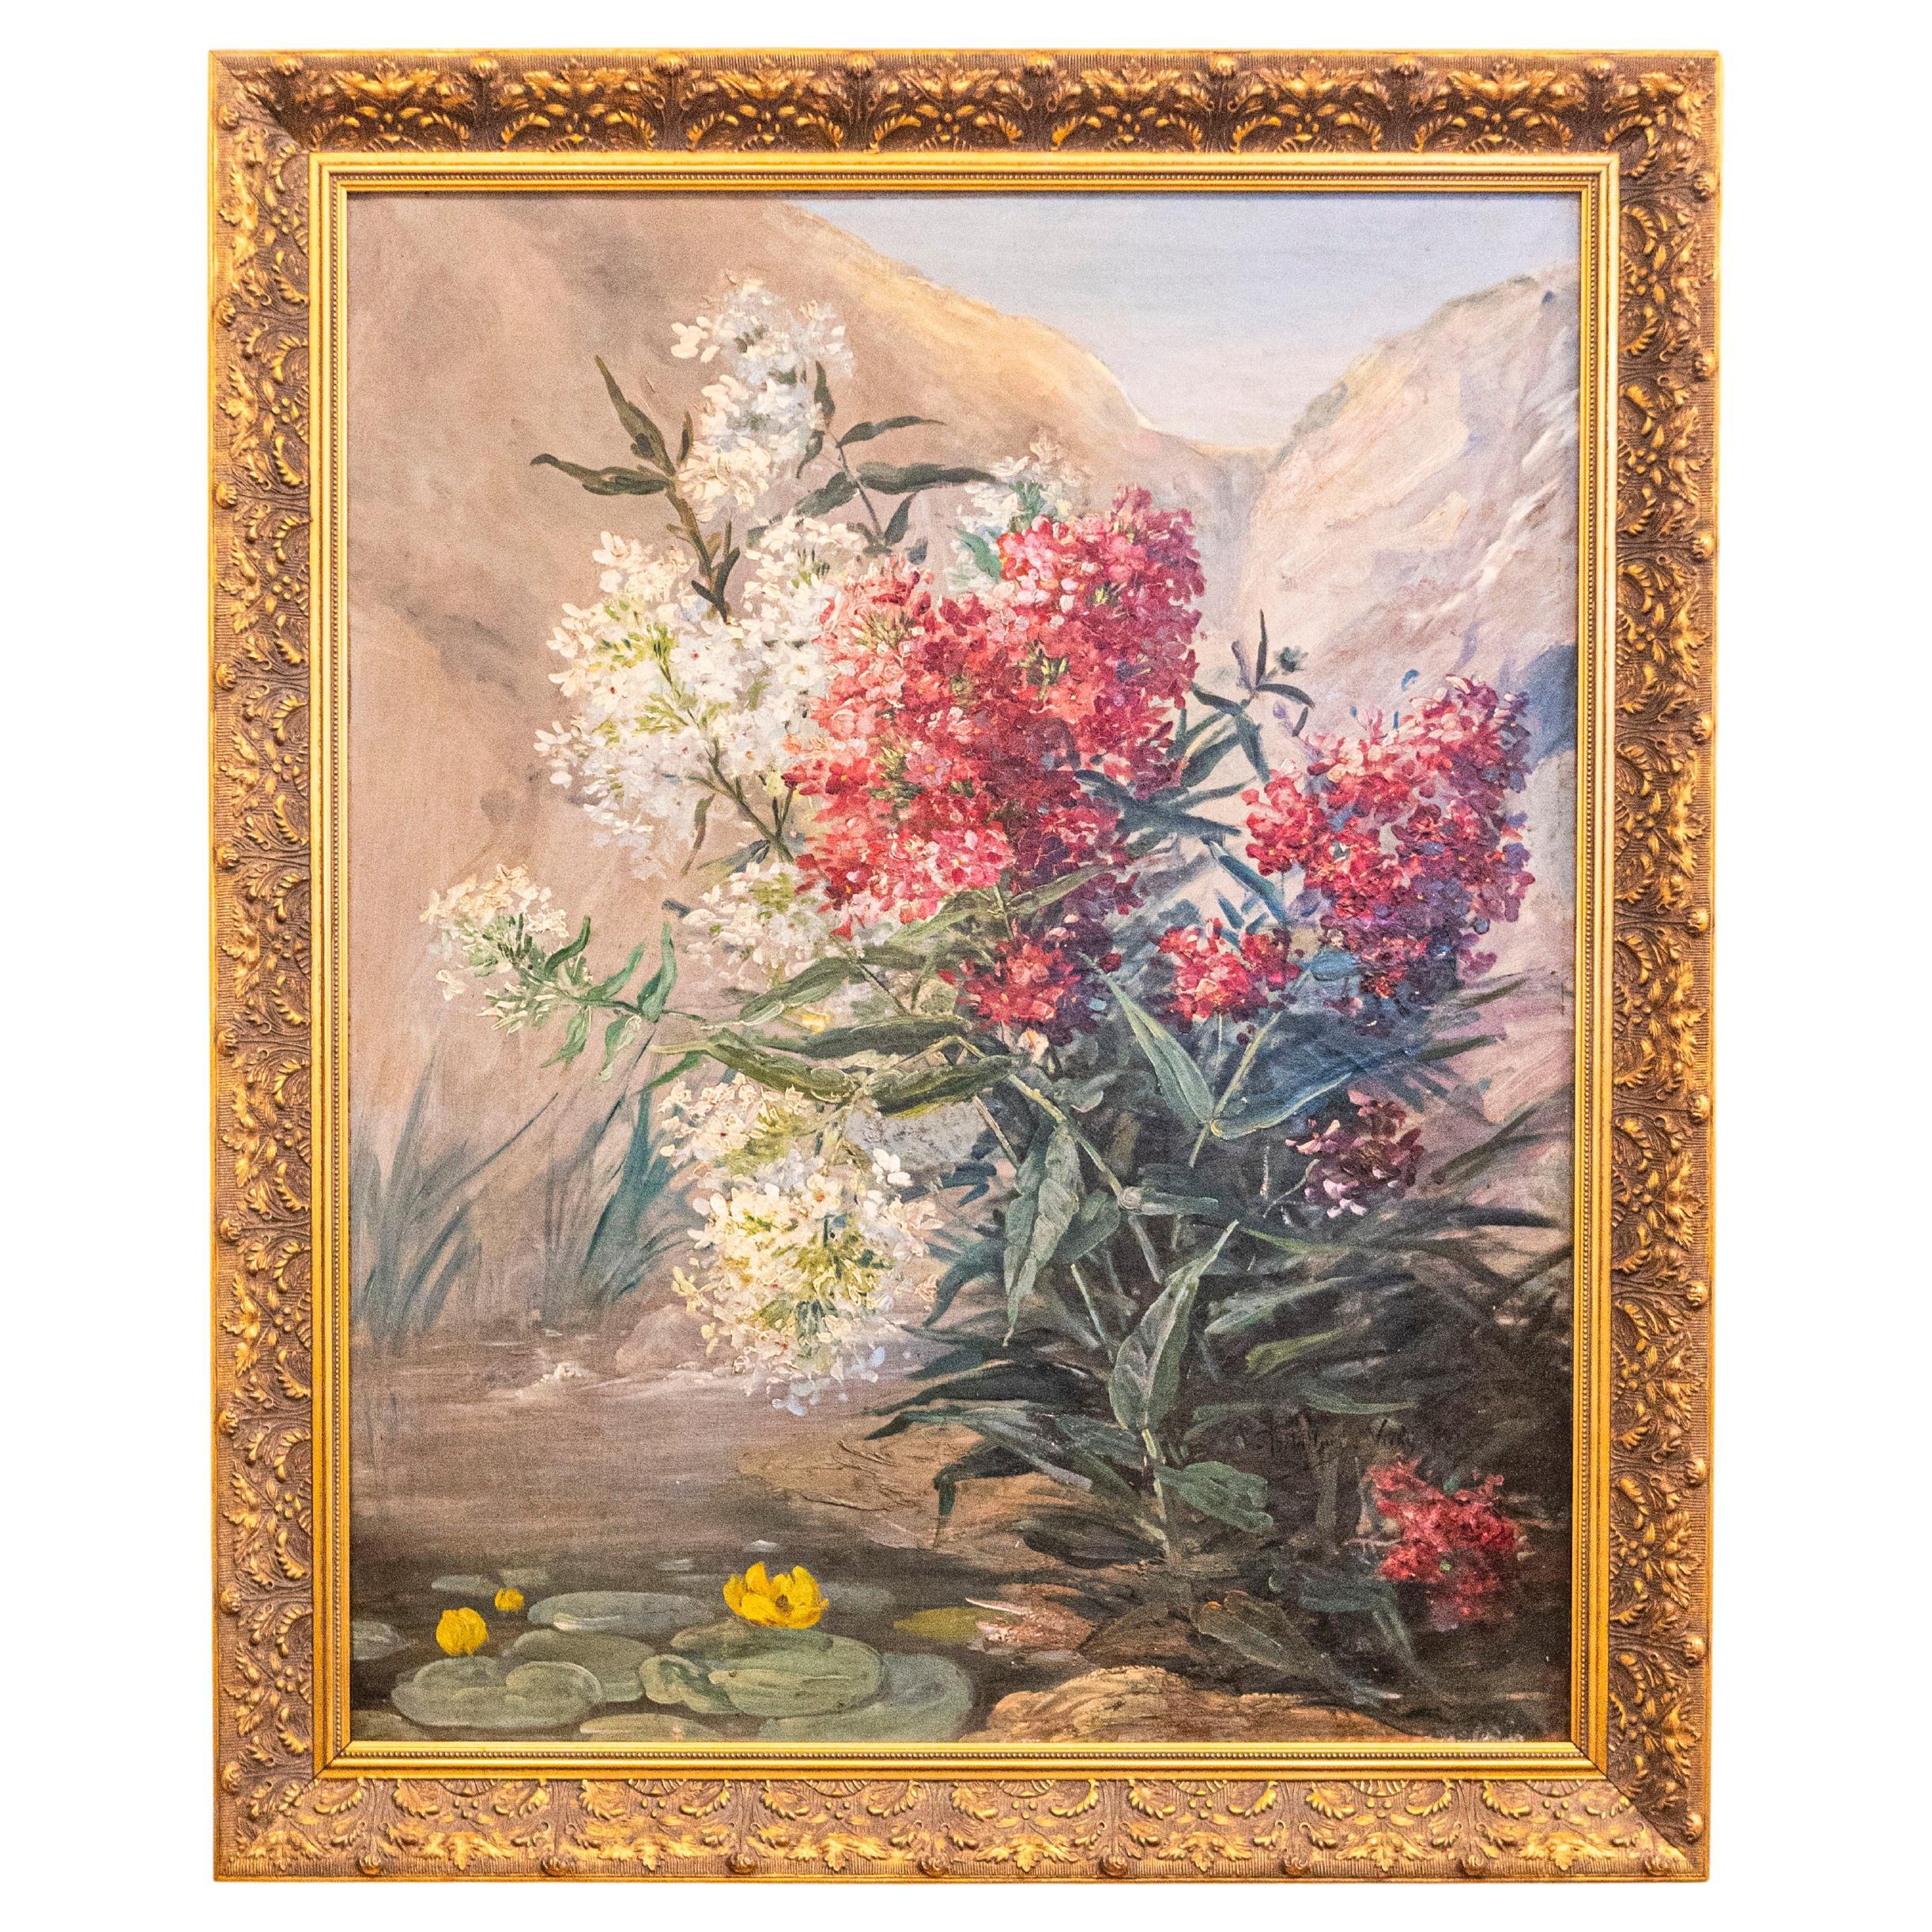 Huile sur toile de la fin du XIXe siècle représentant des fleurs dans une nature morte